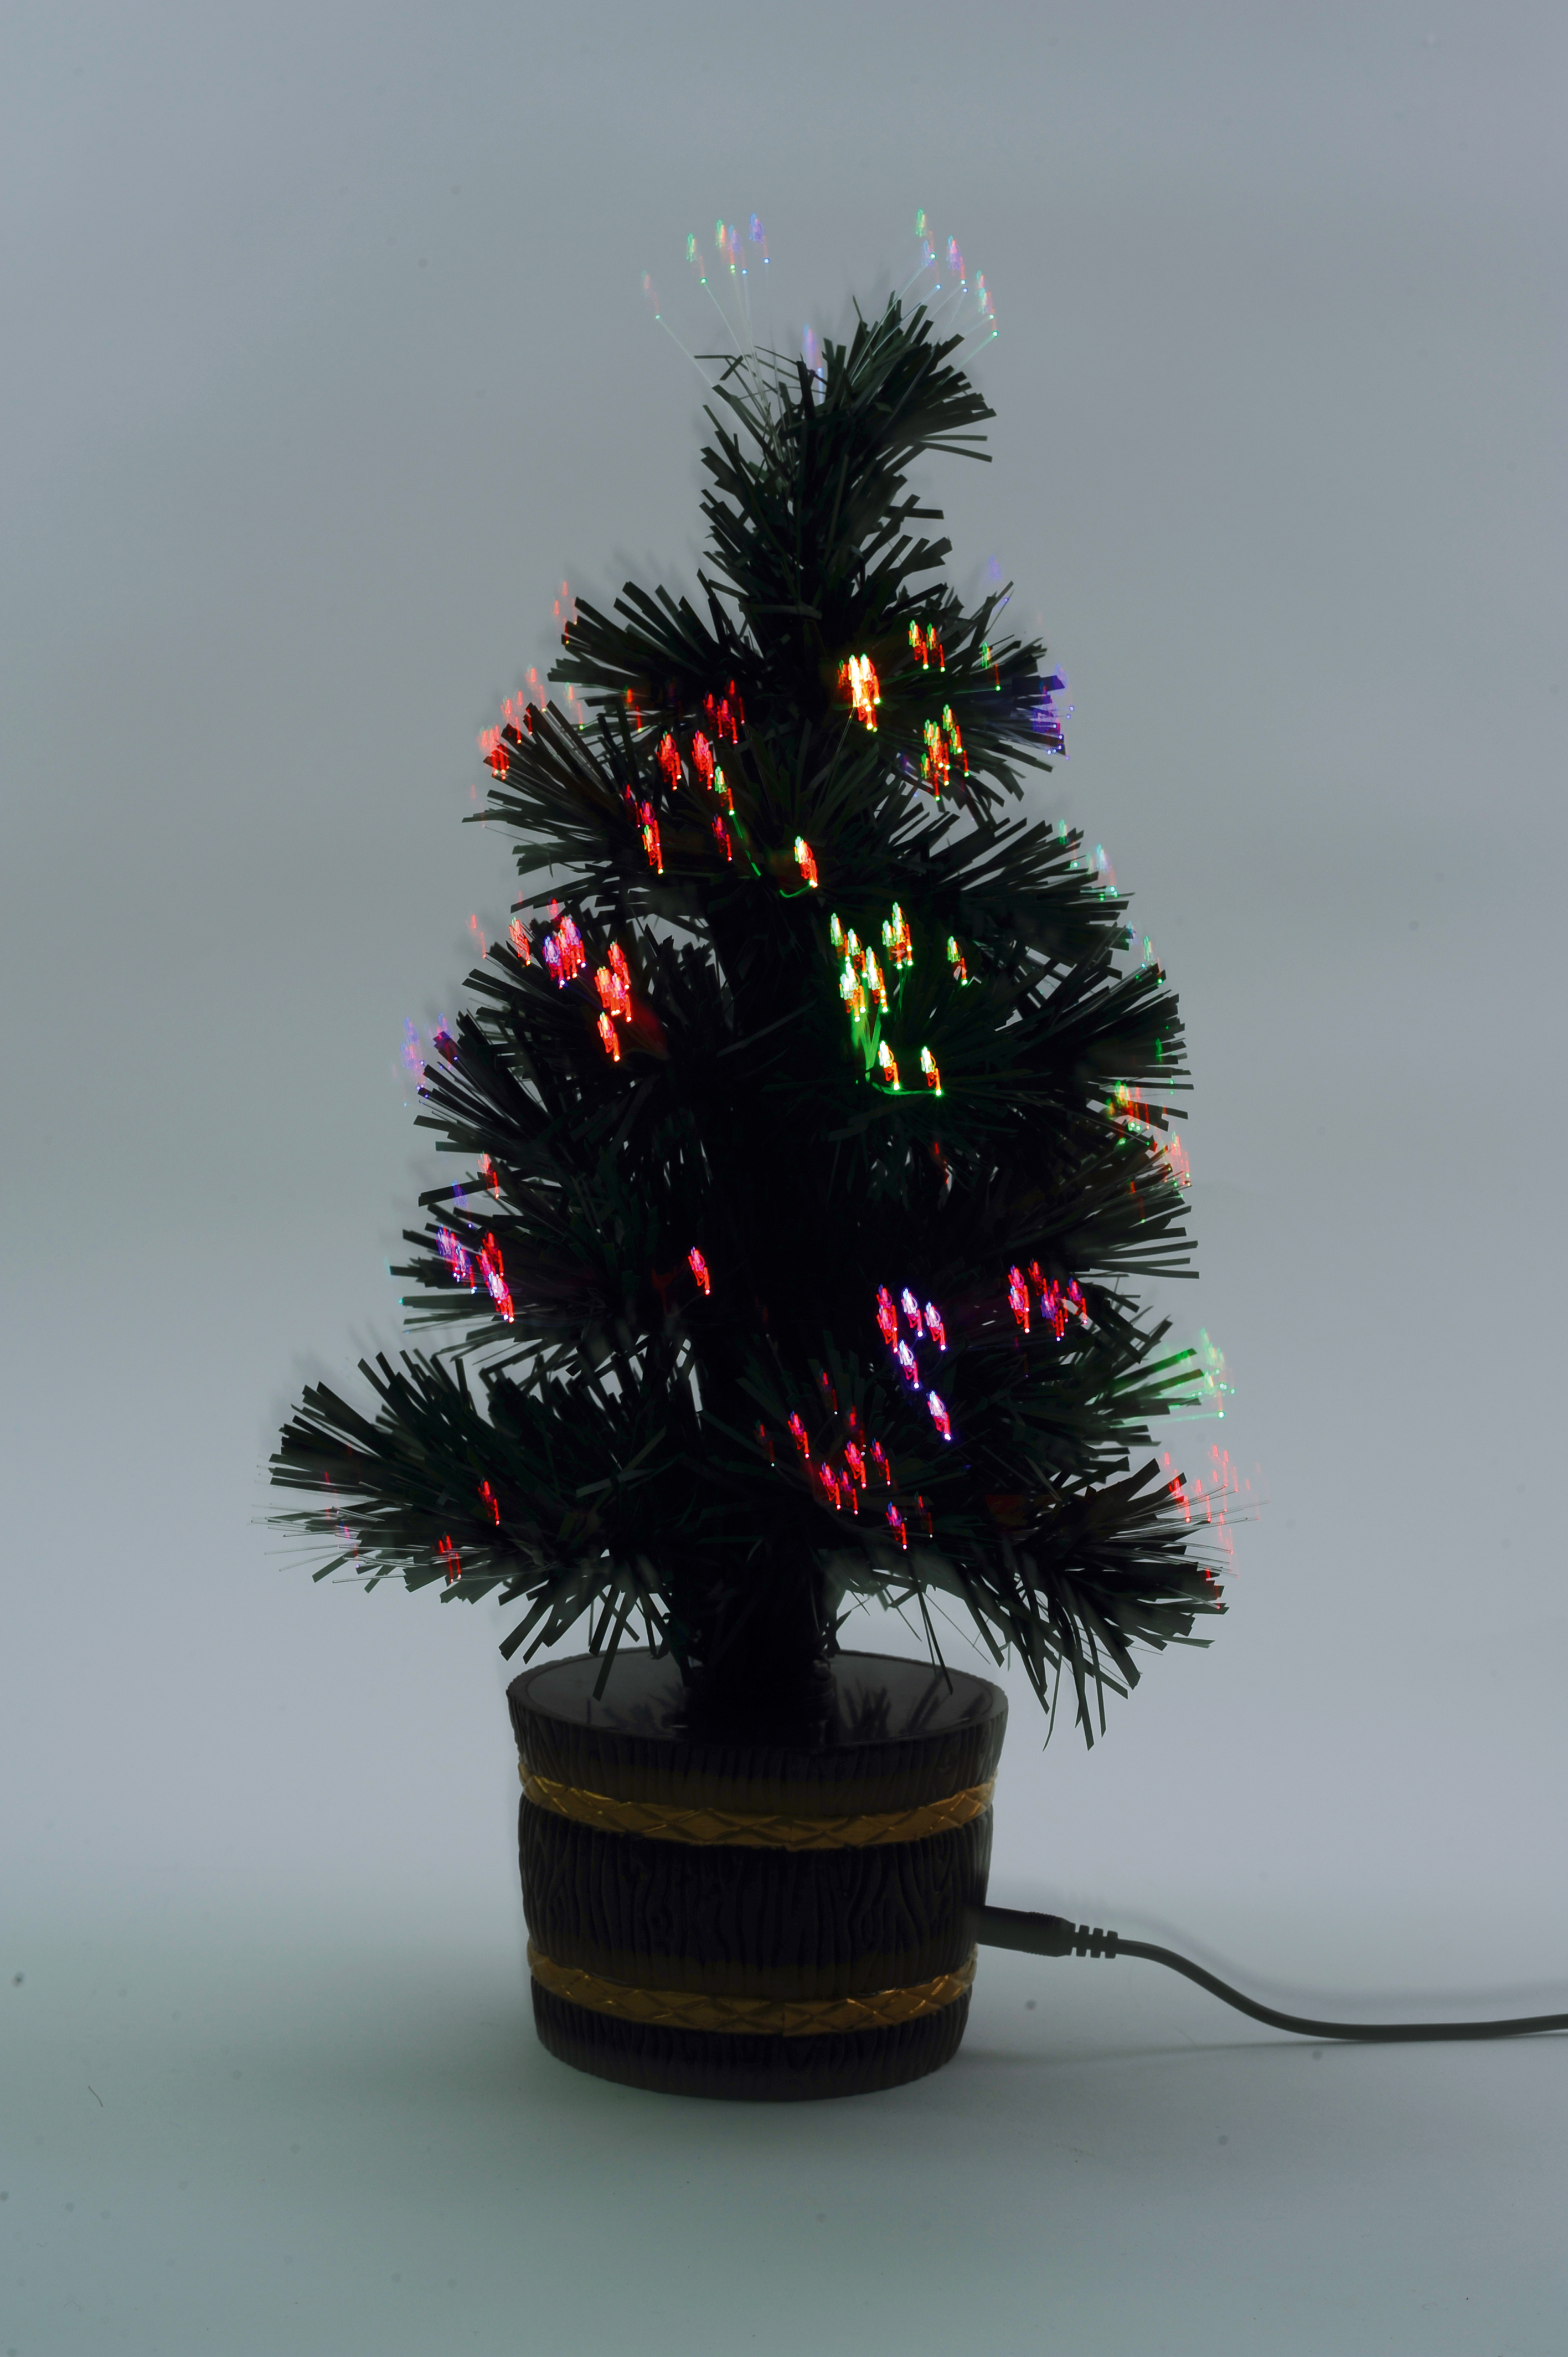 Новогодняя елка с оптоволоконной подсветкой на подставке. При подключении к USB елка плавно меняет цвета